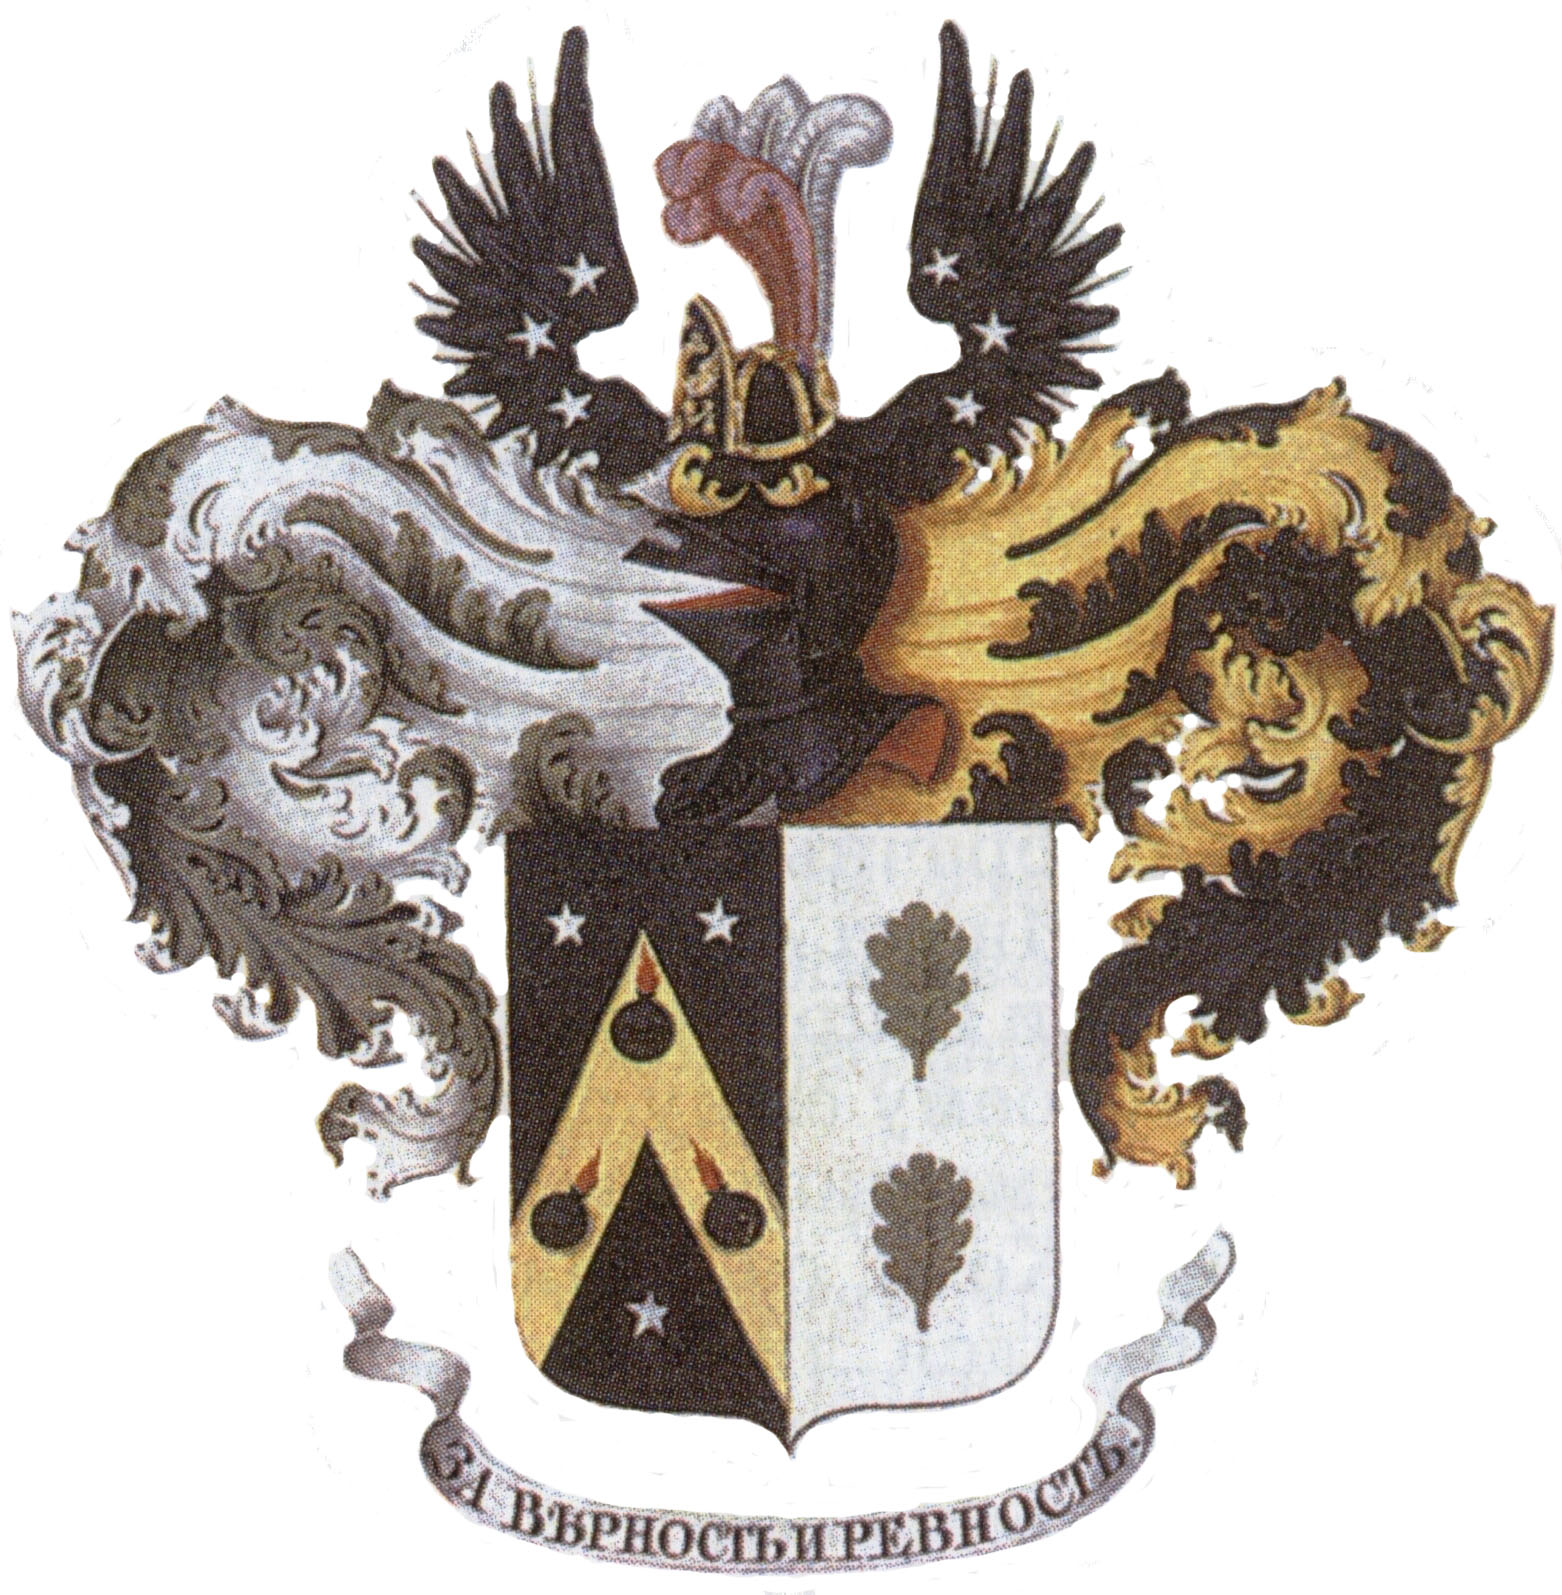 Лейб-кампанские гербы с дивизом "За верность и ревность" получили все участники переворота ноября 1741 года, возведшего на престол Елизавету Петровну.